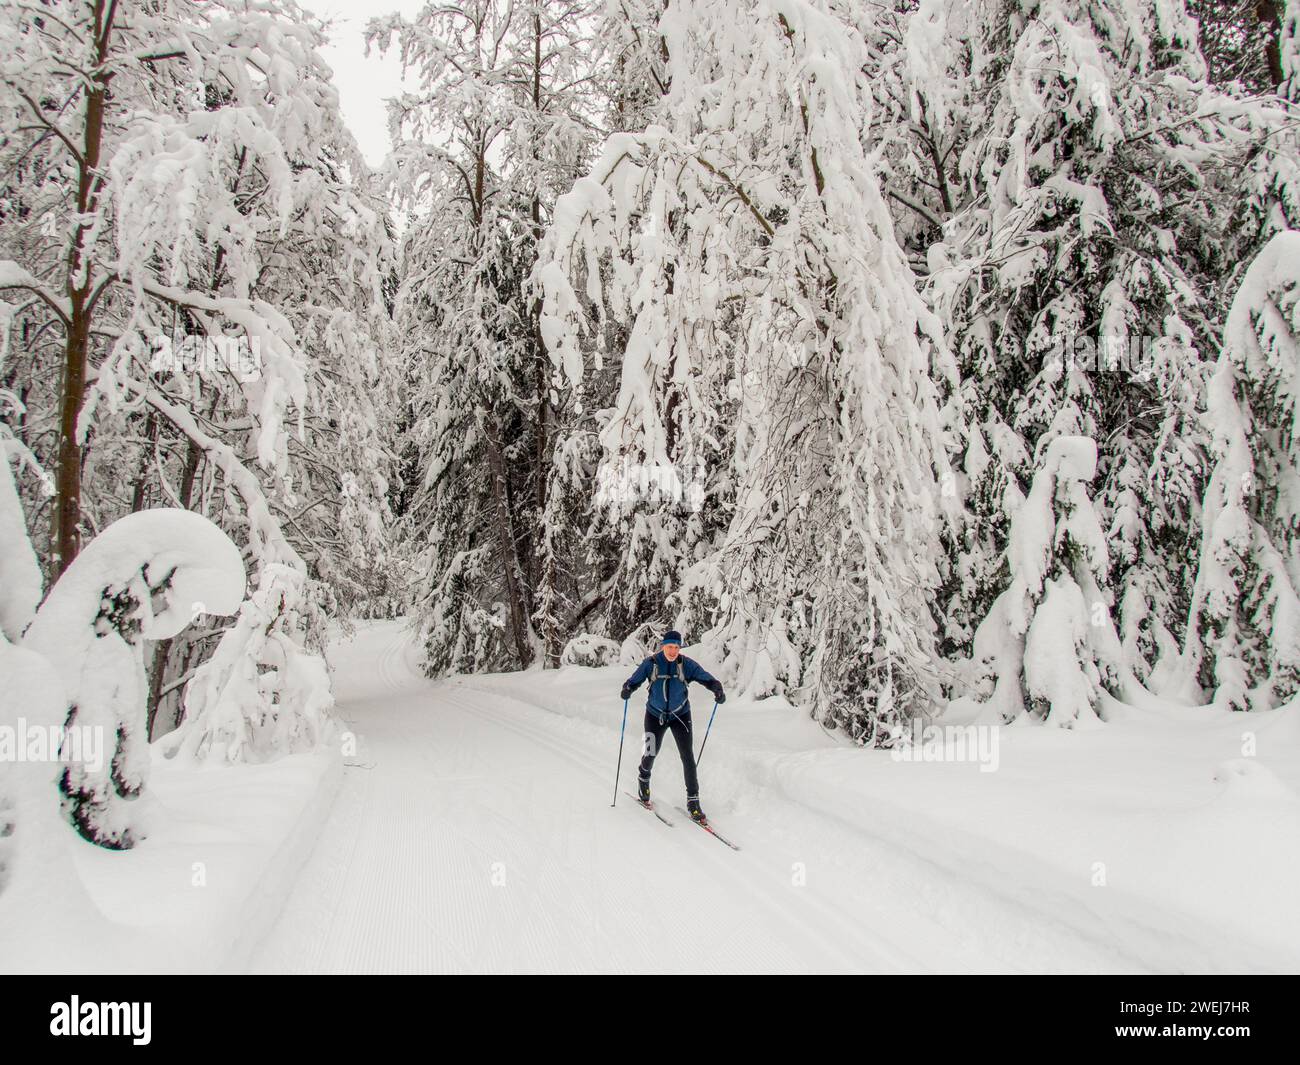 Una scena invernale con le persone che praticano lo sci di fondo attraverso la foresta innevata del Lake Wenatchee State Park nella parte orientale dello Stato di Washington, Stati Uniti. Foto Stock